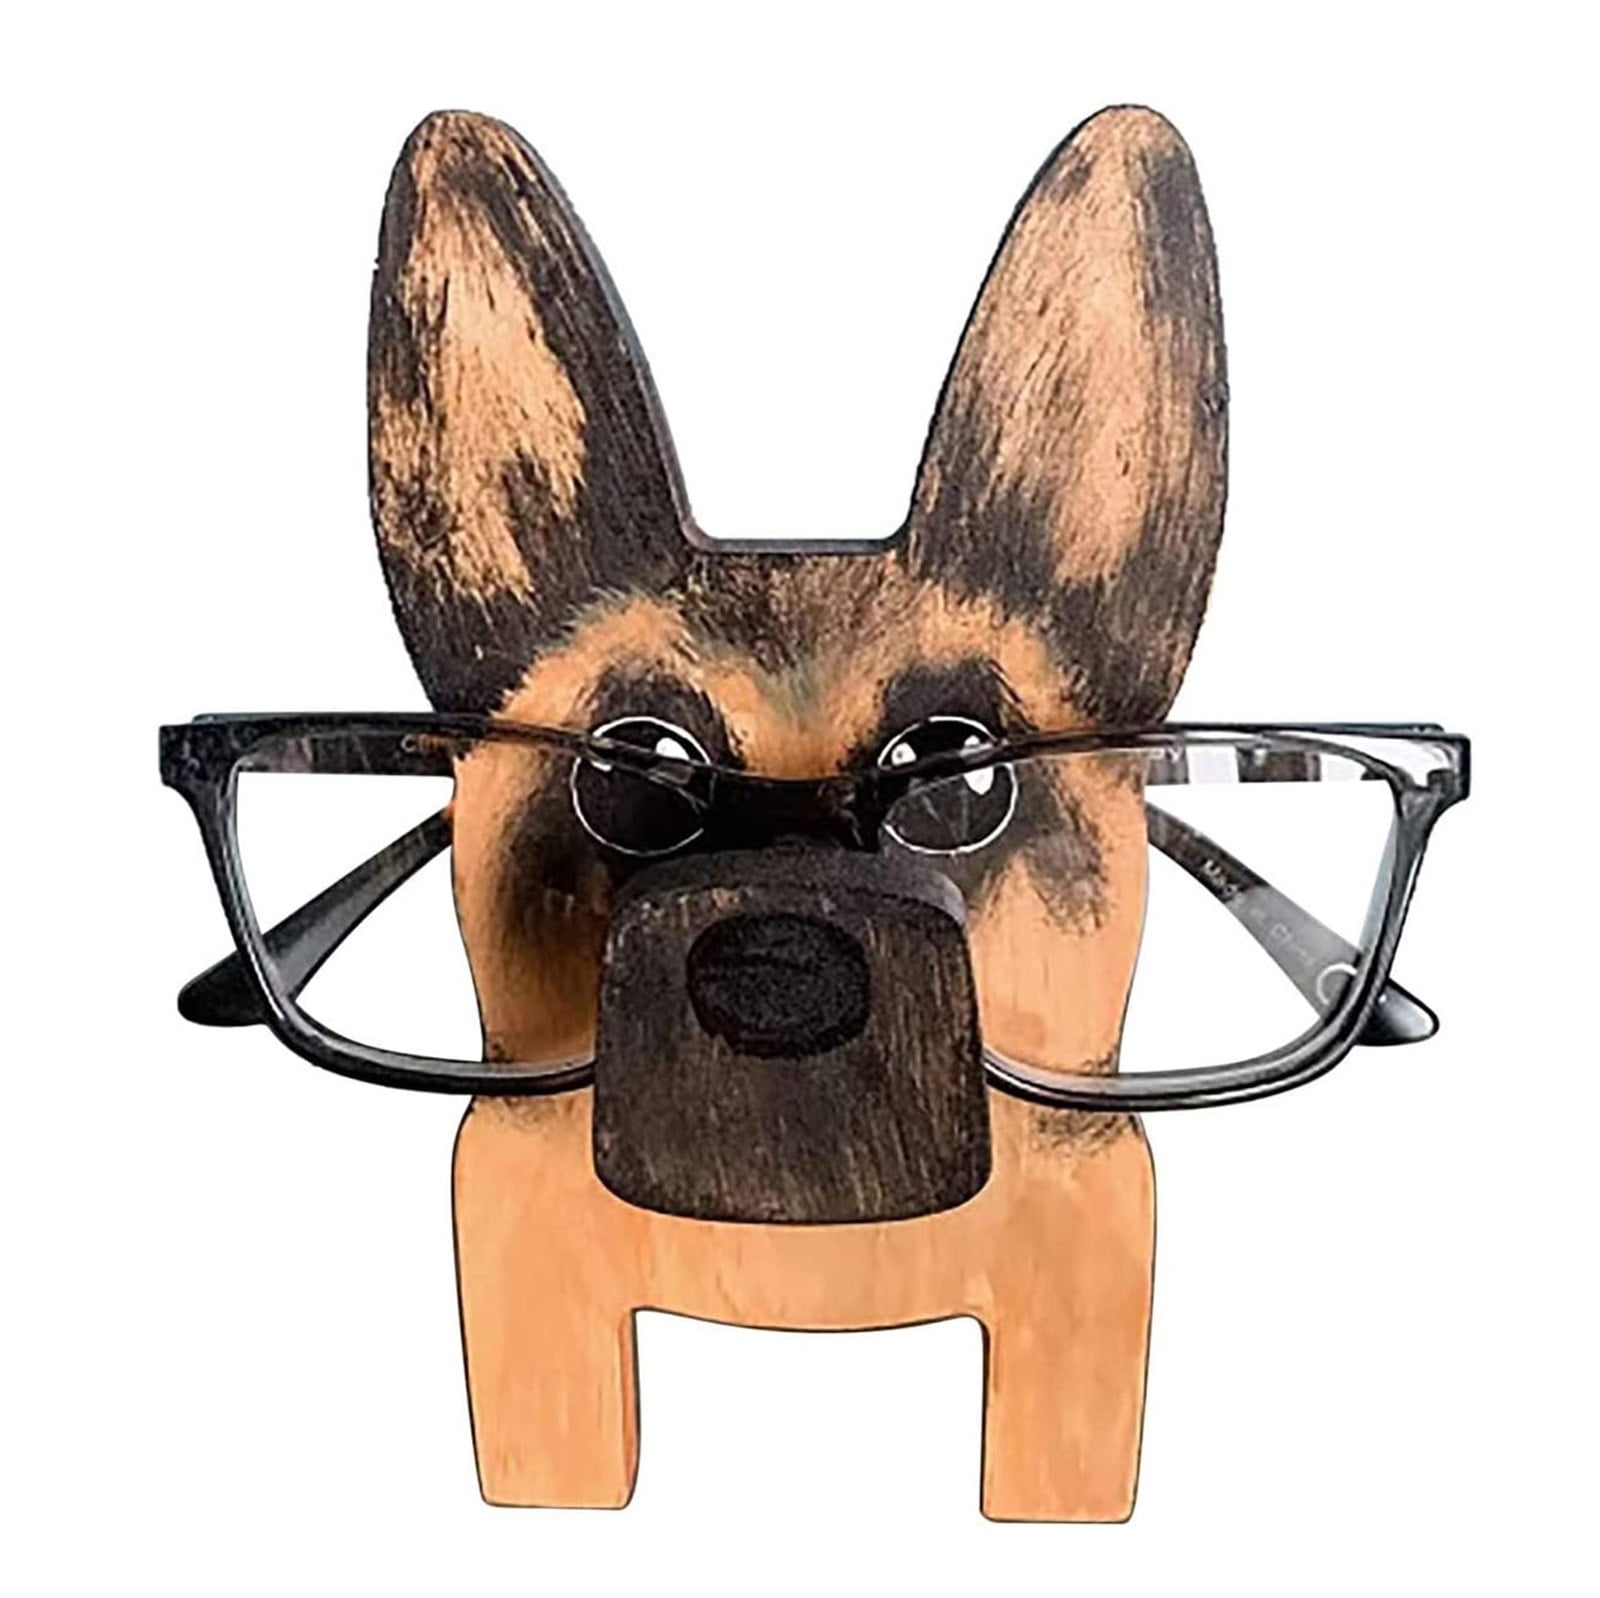 Tarmeek Handmade Wood Carved Animal Eyeglass Holder, Cute Sunglasses ...